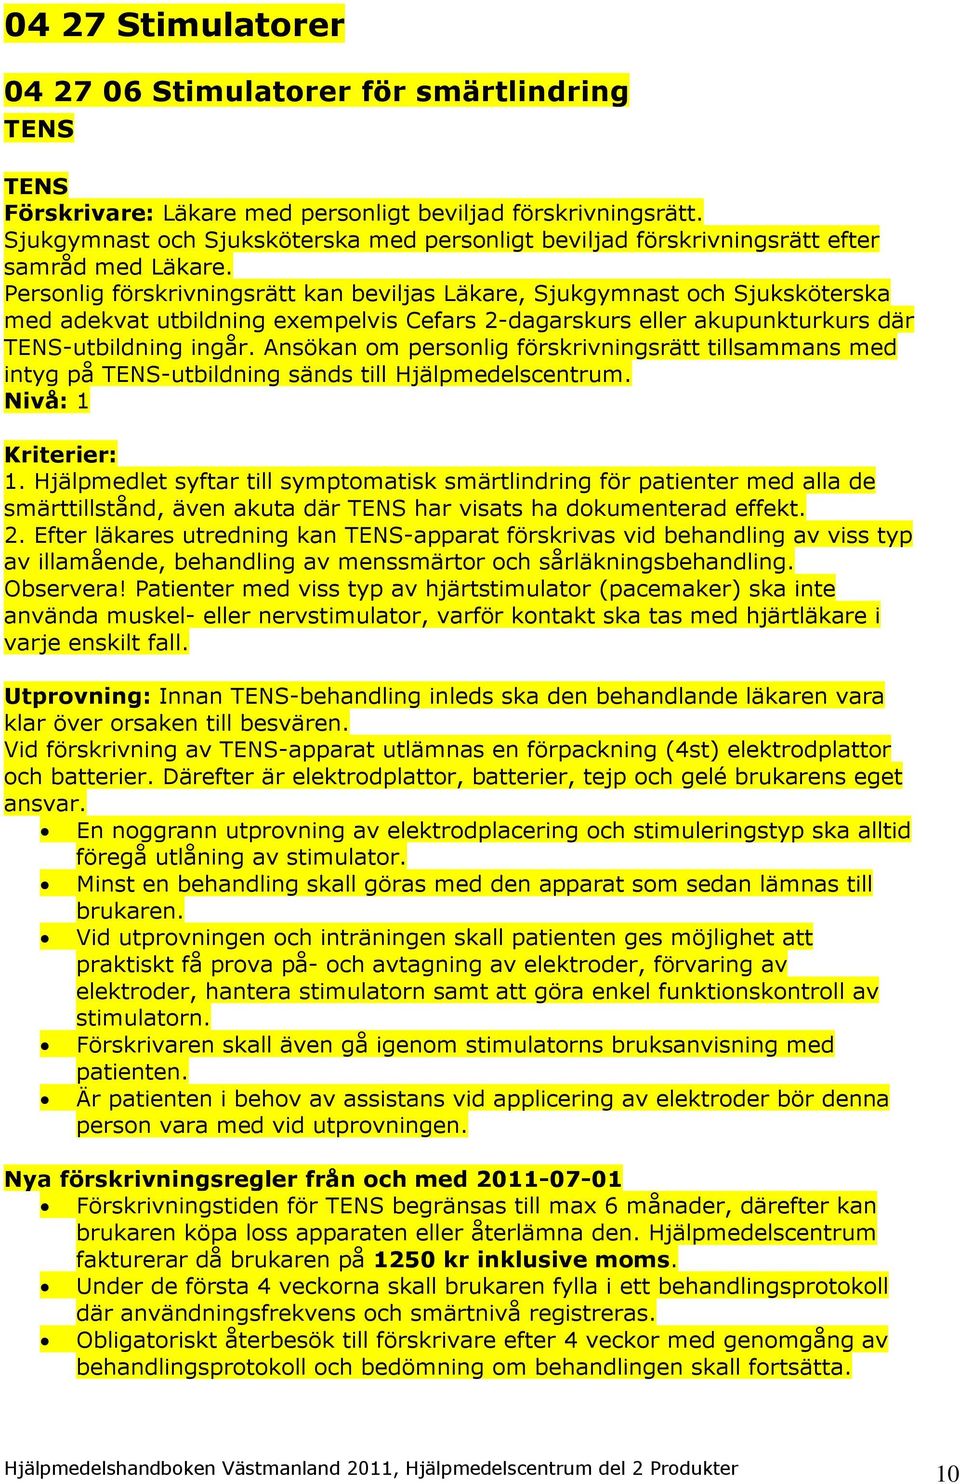 Hjälpmedelshandboken för Västmanland Gäller från 1 juli Bok 2  Hjälpmedelscentrum del 2 Produkter - PDF Gratis nedladdning